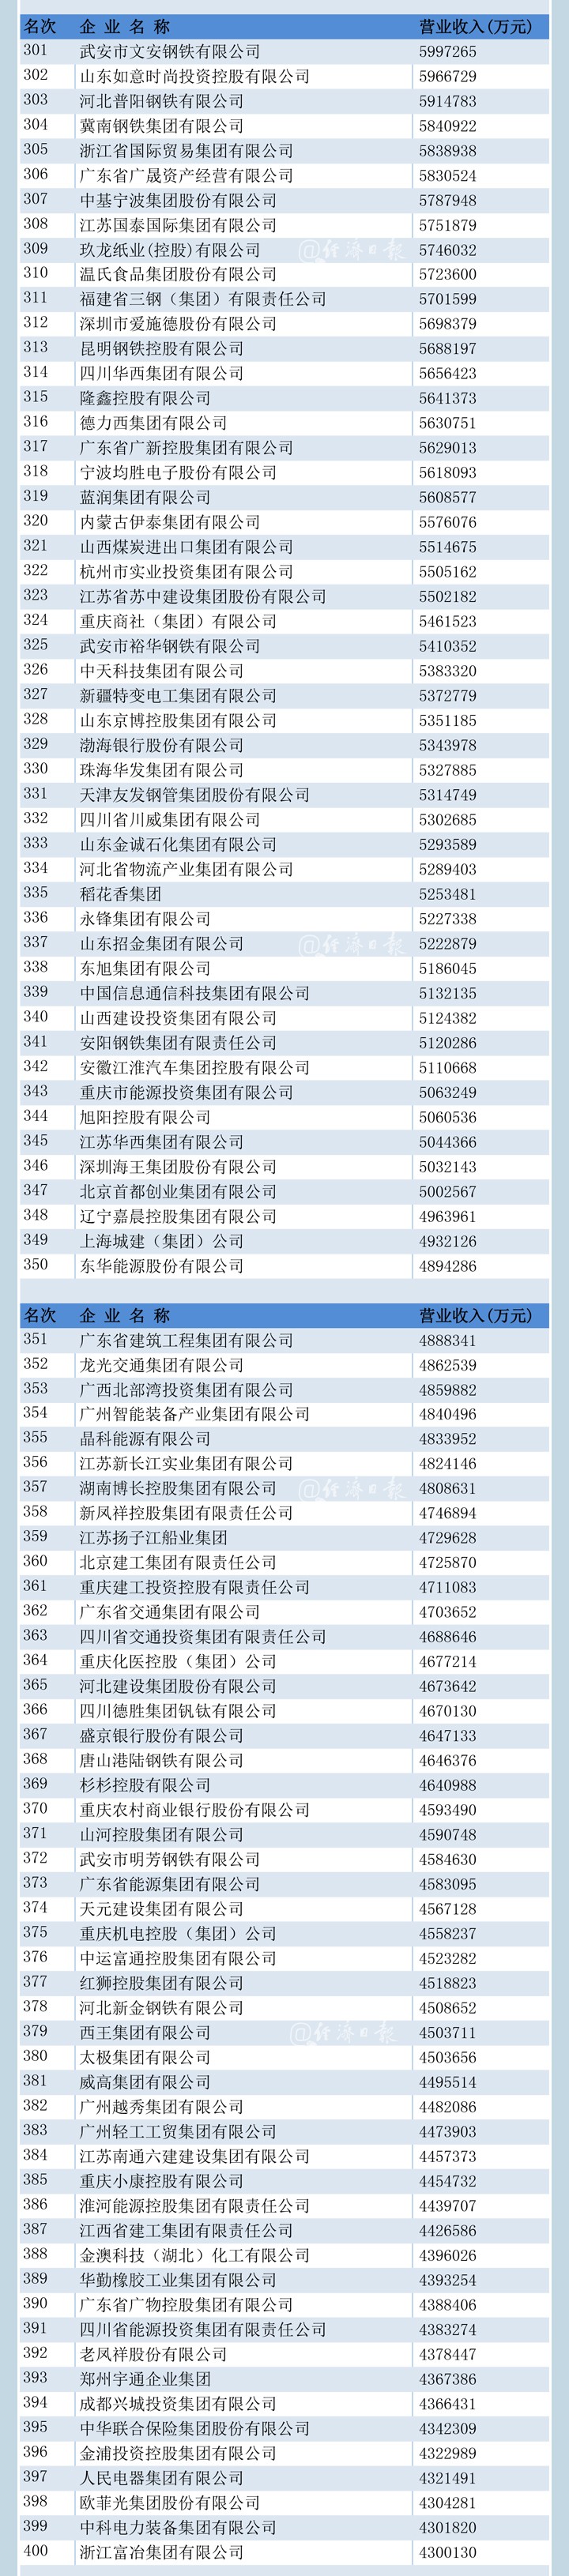 青海4家企业入围“中国500强”等榜单